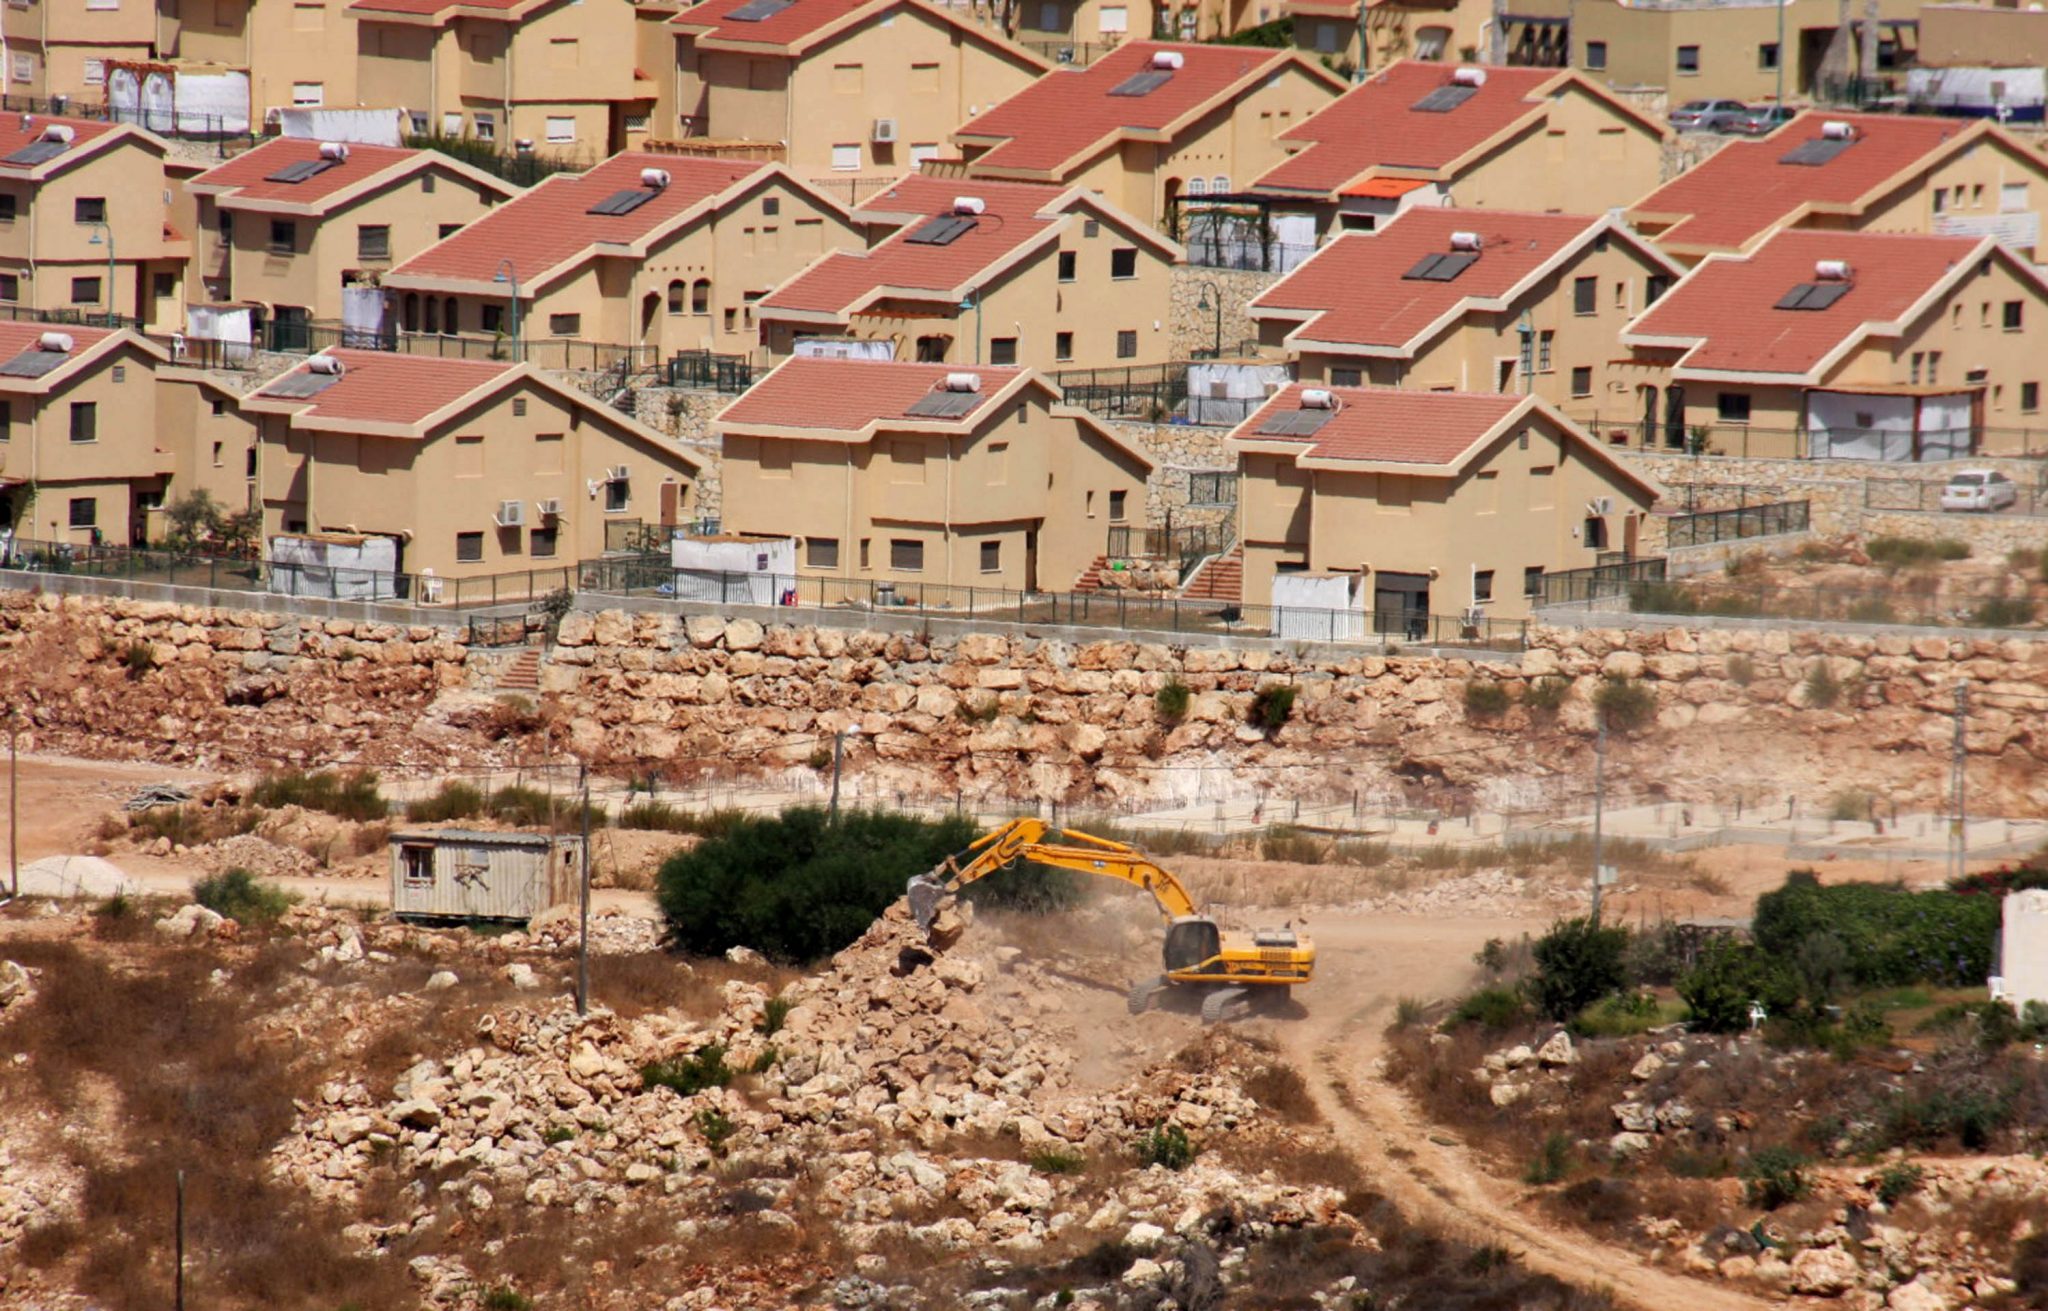   إسرائيل تصادق على بناء 196 وحدة استيطانية جديدة فى القدس